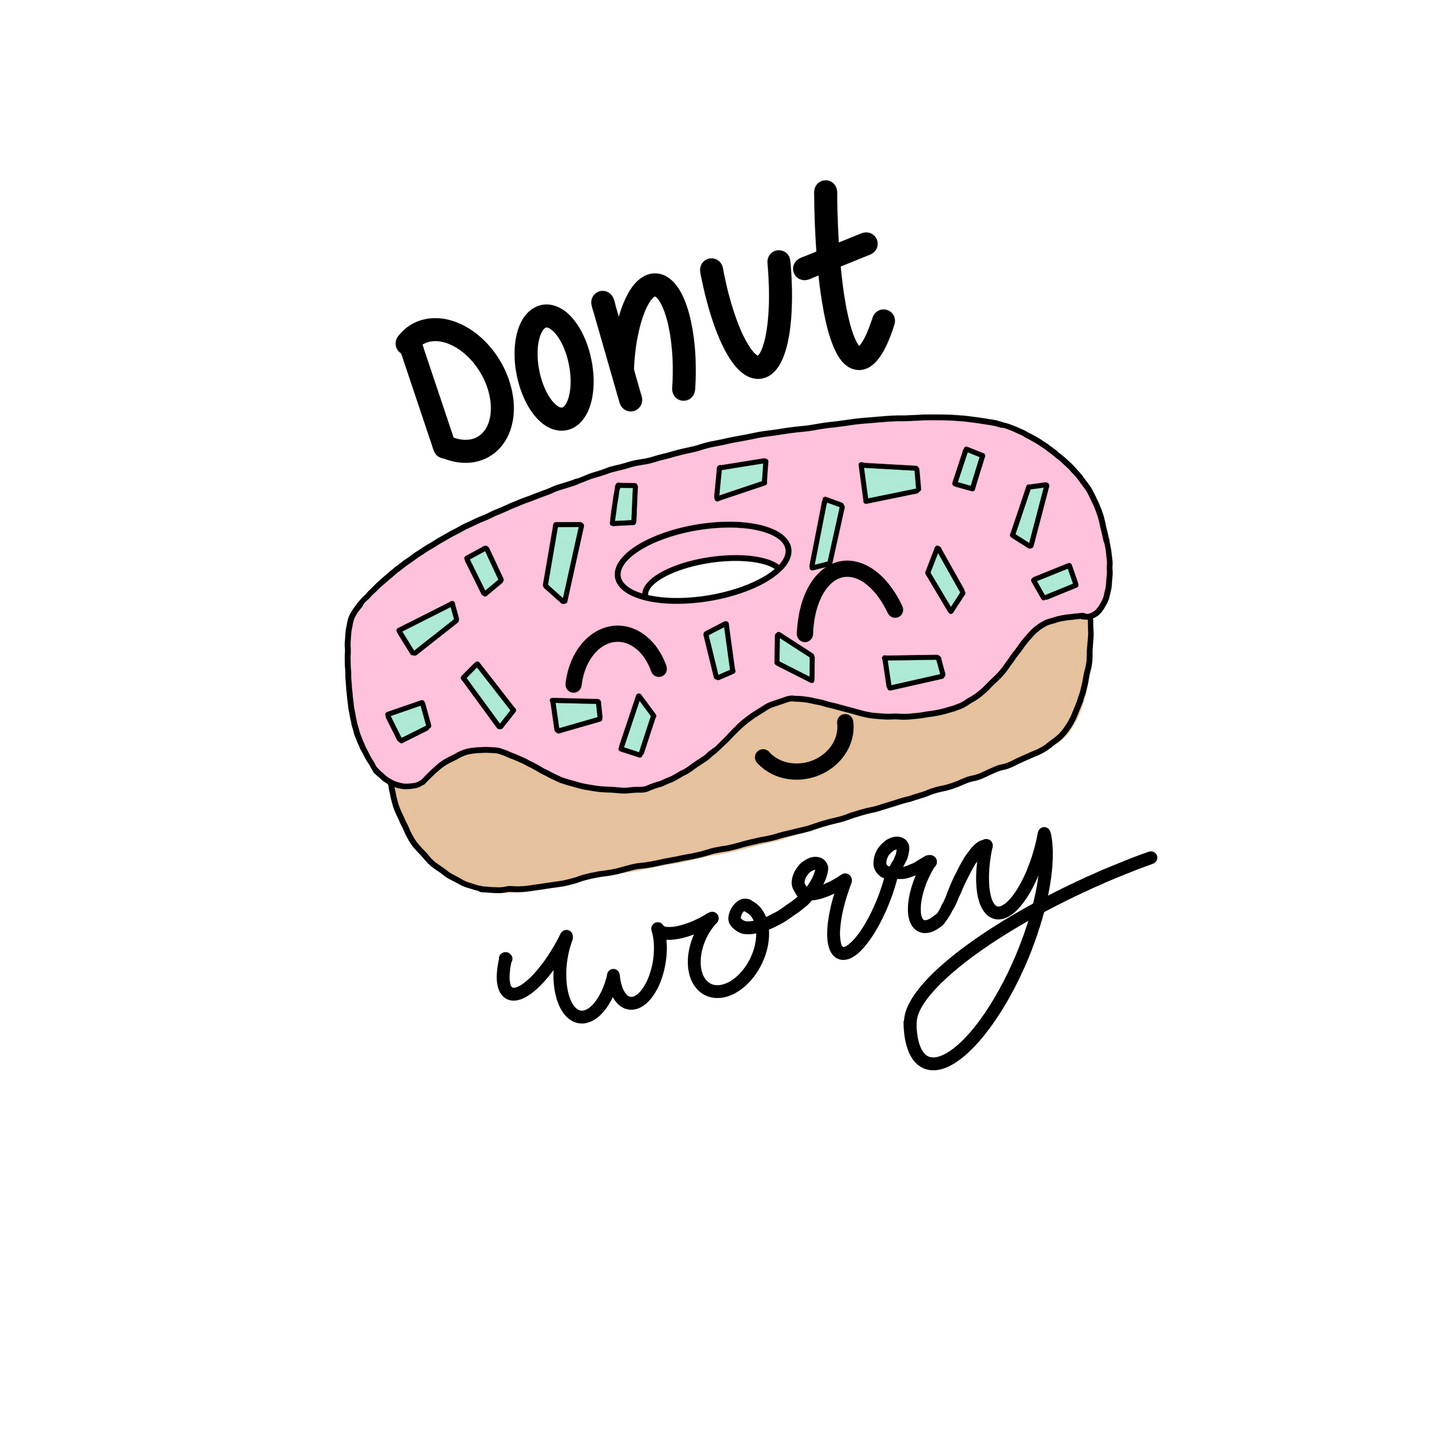 Plotterdatei "Donut worry"